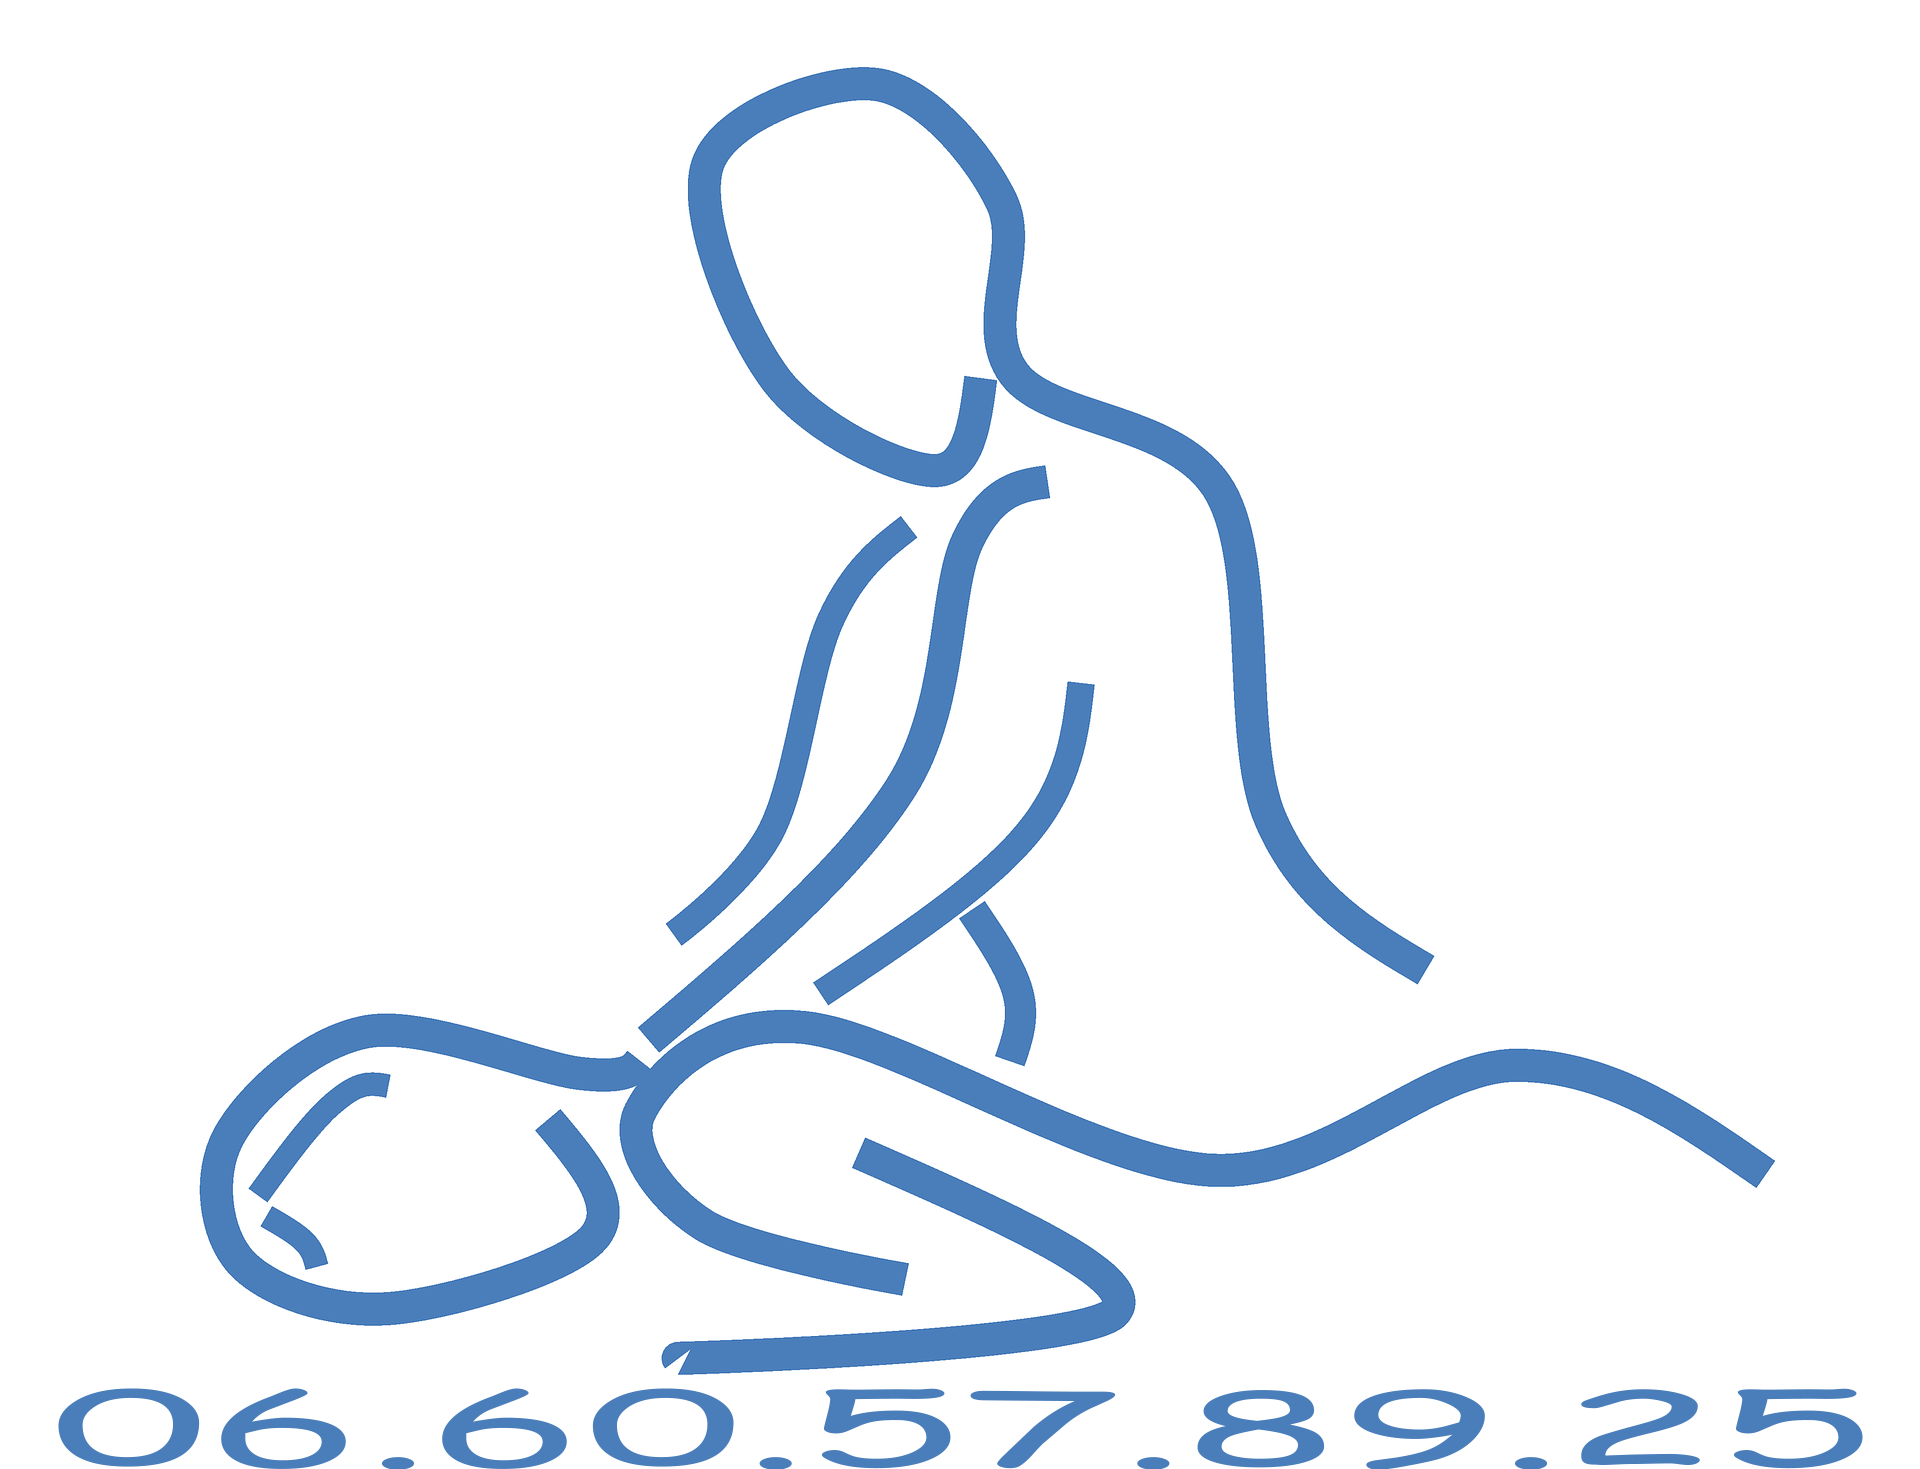 Massage acupression - massage bien être à domicile sur Sainte Luce sur Loire, Rezé, Bouguenais, Vertou... - massage californien - soin énergétique - Massage de la tête aux pieds.